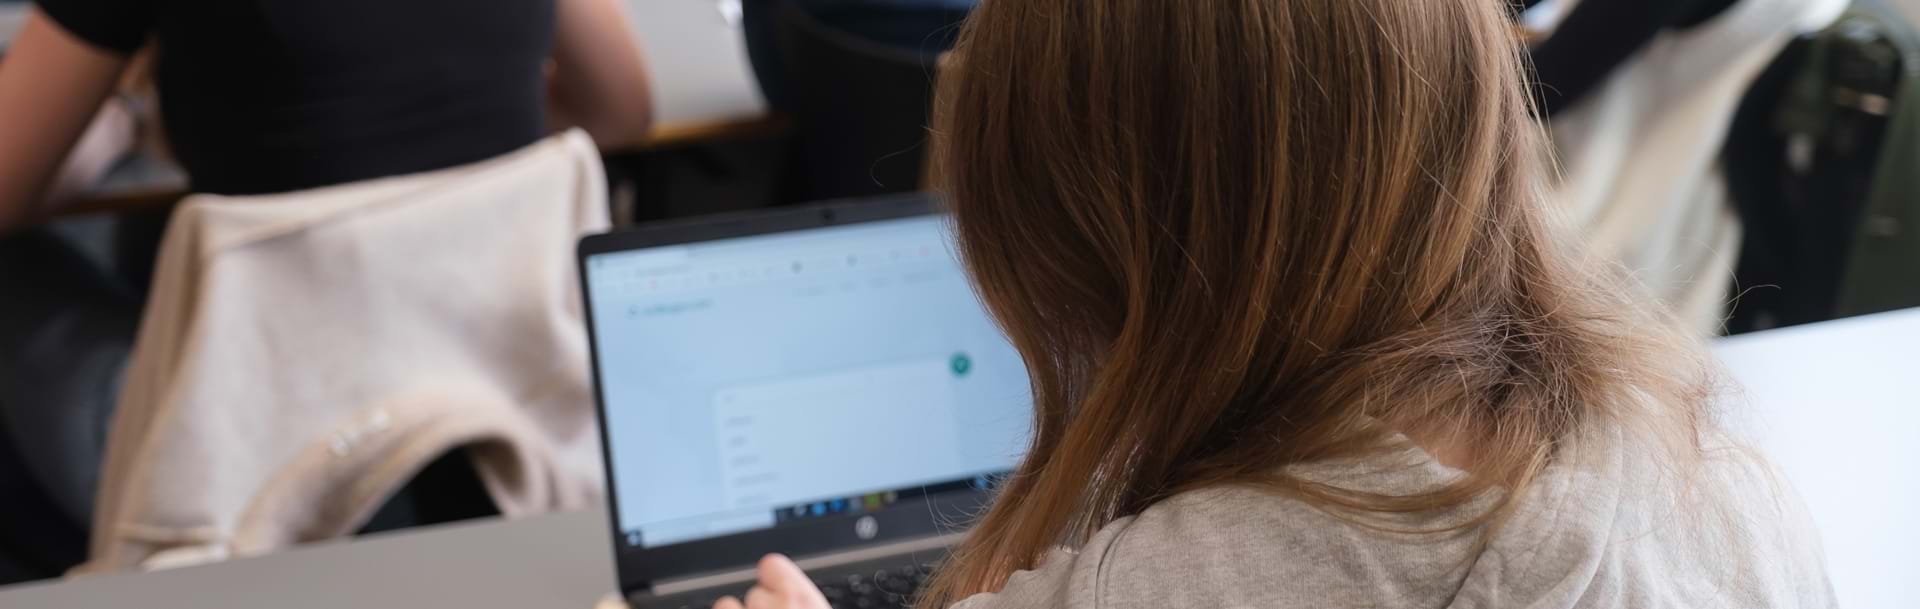 Pige set bagfra laver skriftlig opgave på bærbar computer